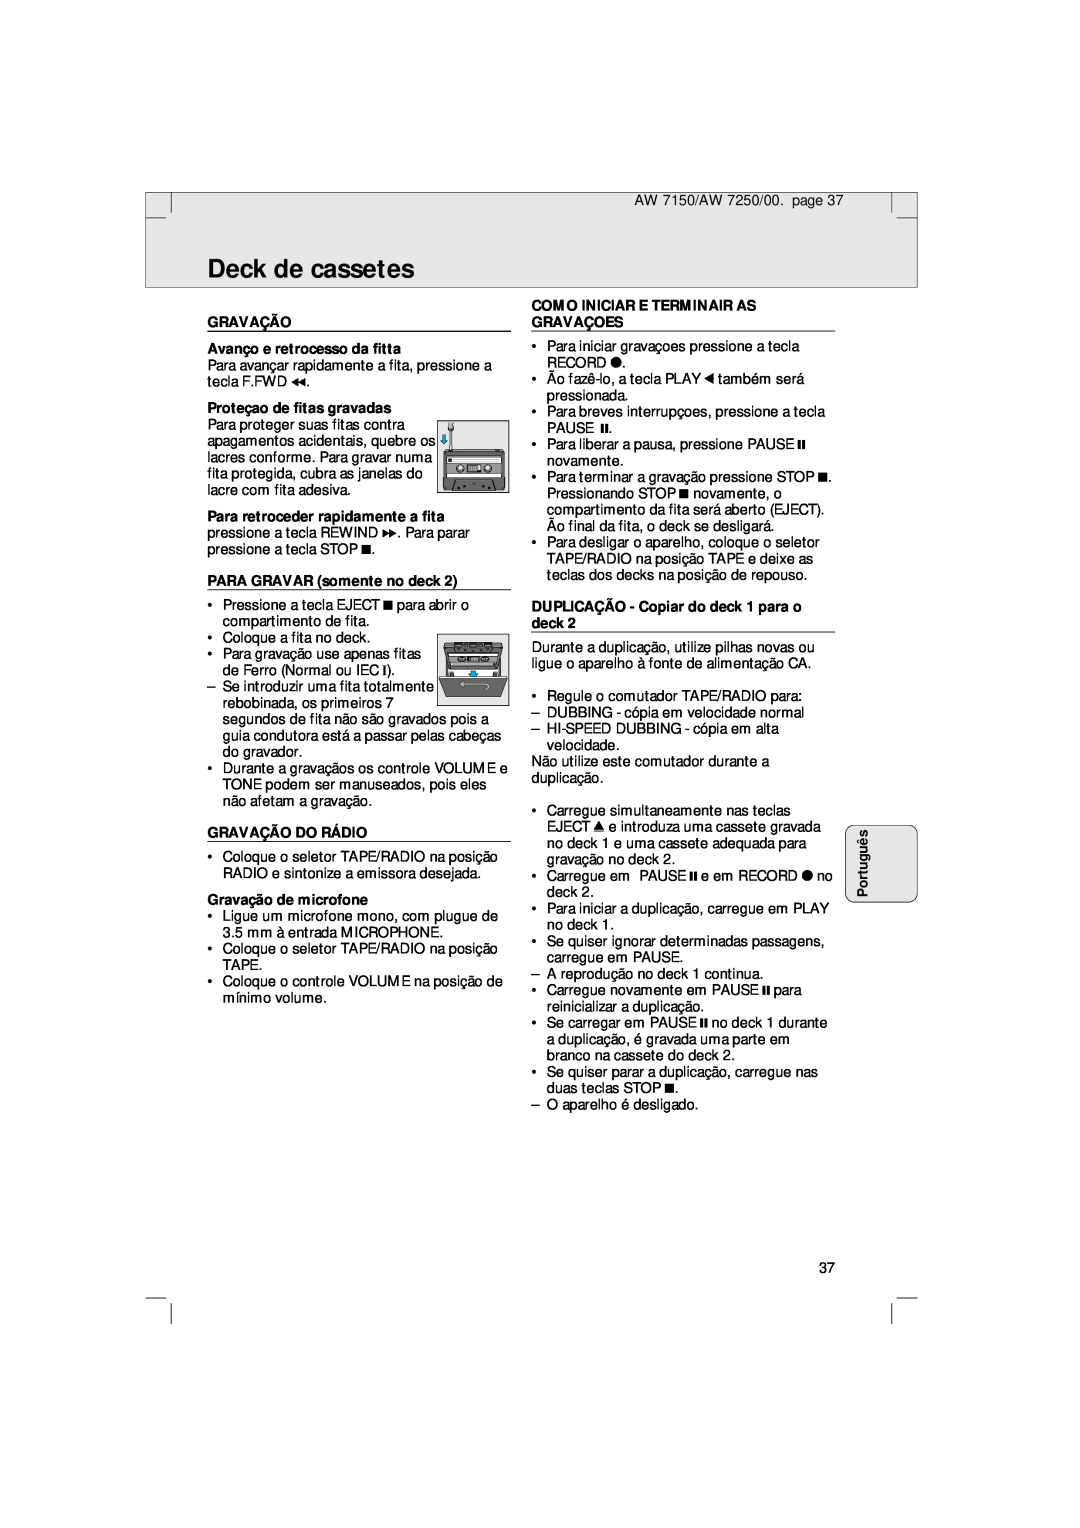 Philips AW 7250/04S manual Deck de cassetes, Português, GRAVAÇÃO Avanço e retrocesso da fitta, Proteçao de fitas gravadas 